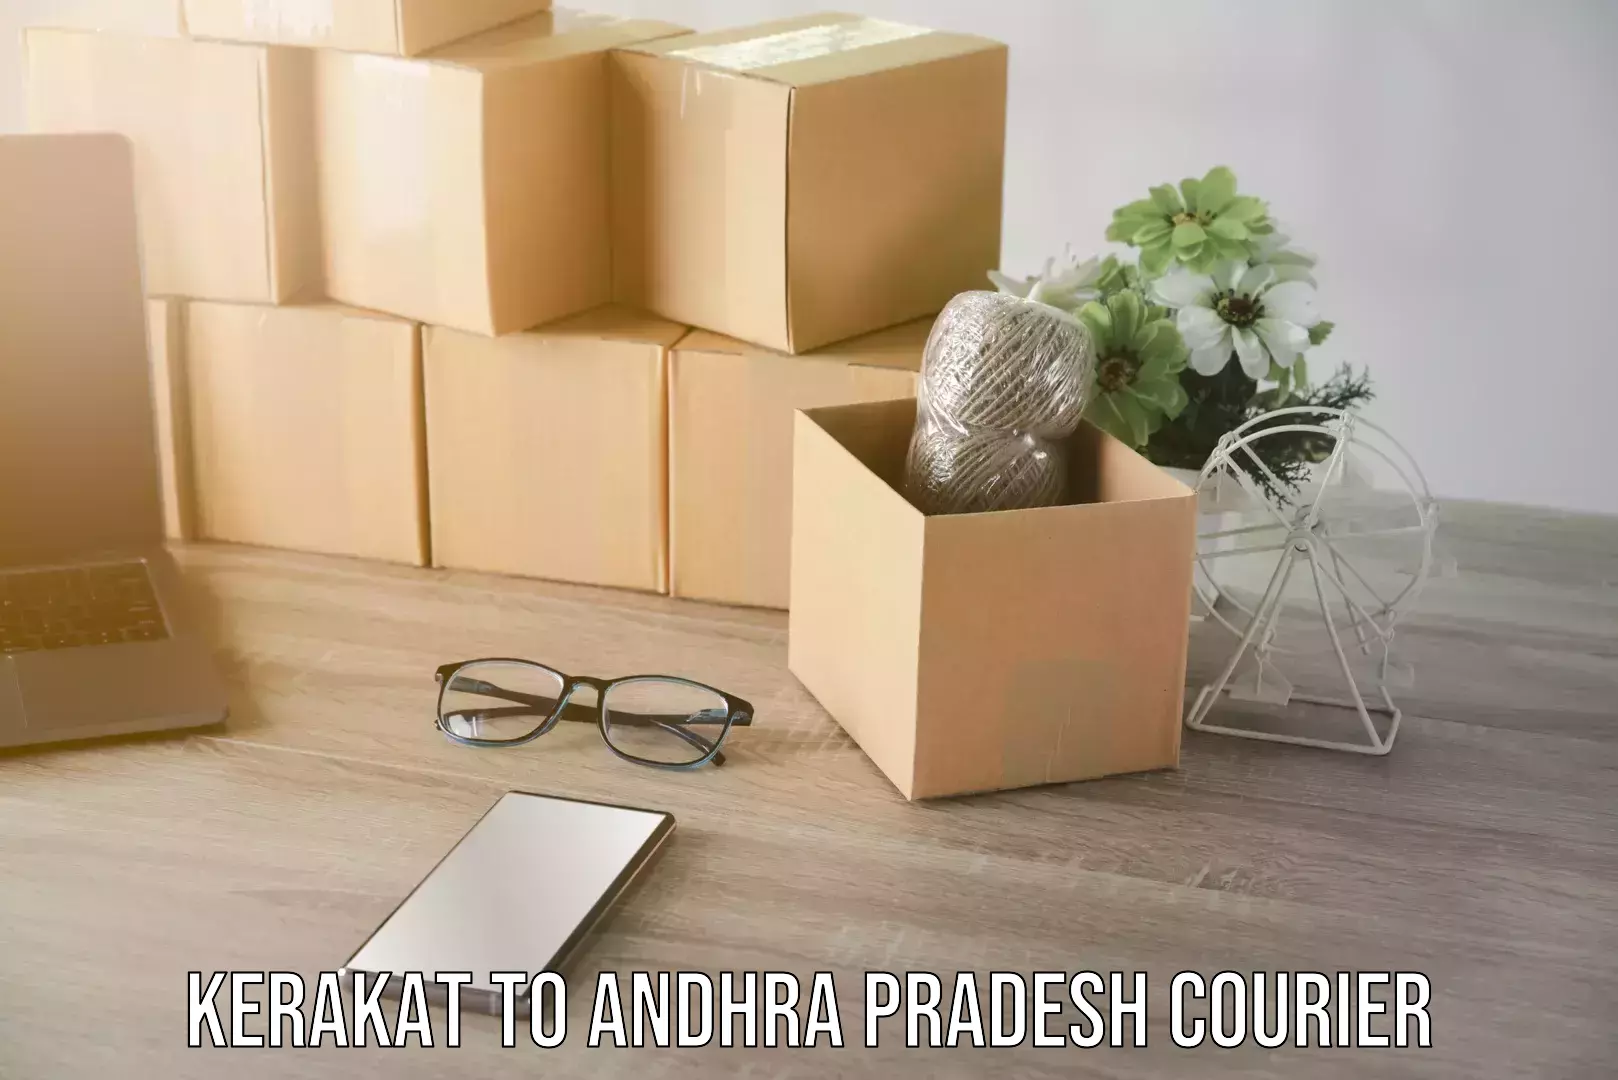 Stress-free furniture moving in Kerakat to Andhra Pradesh